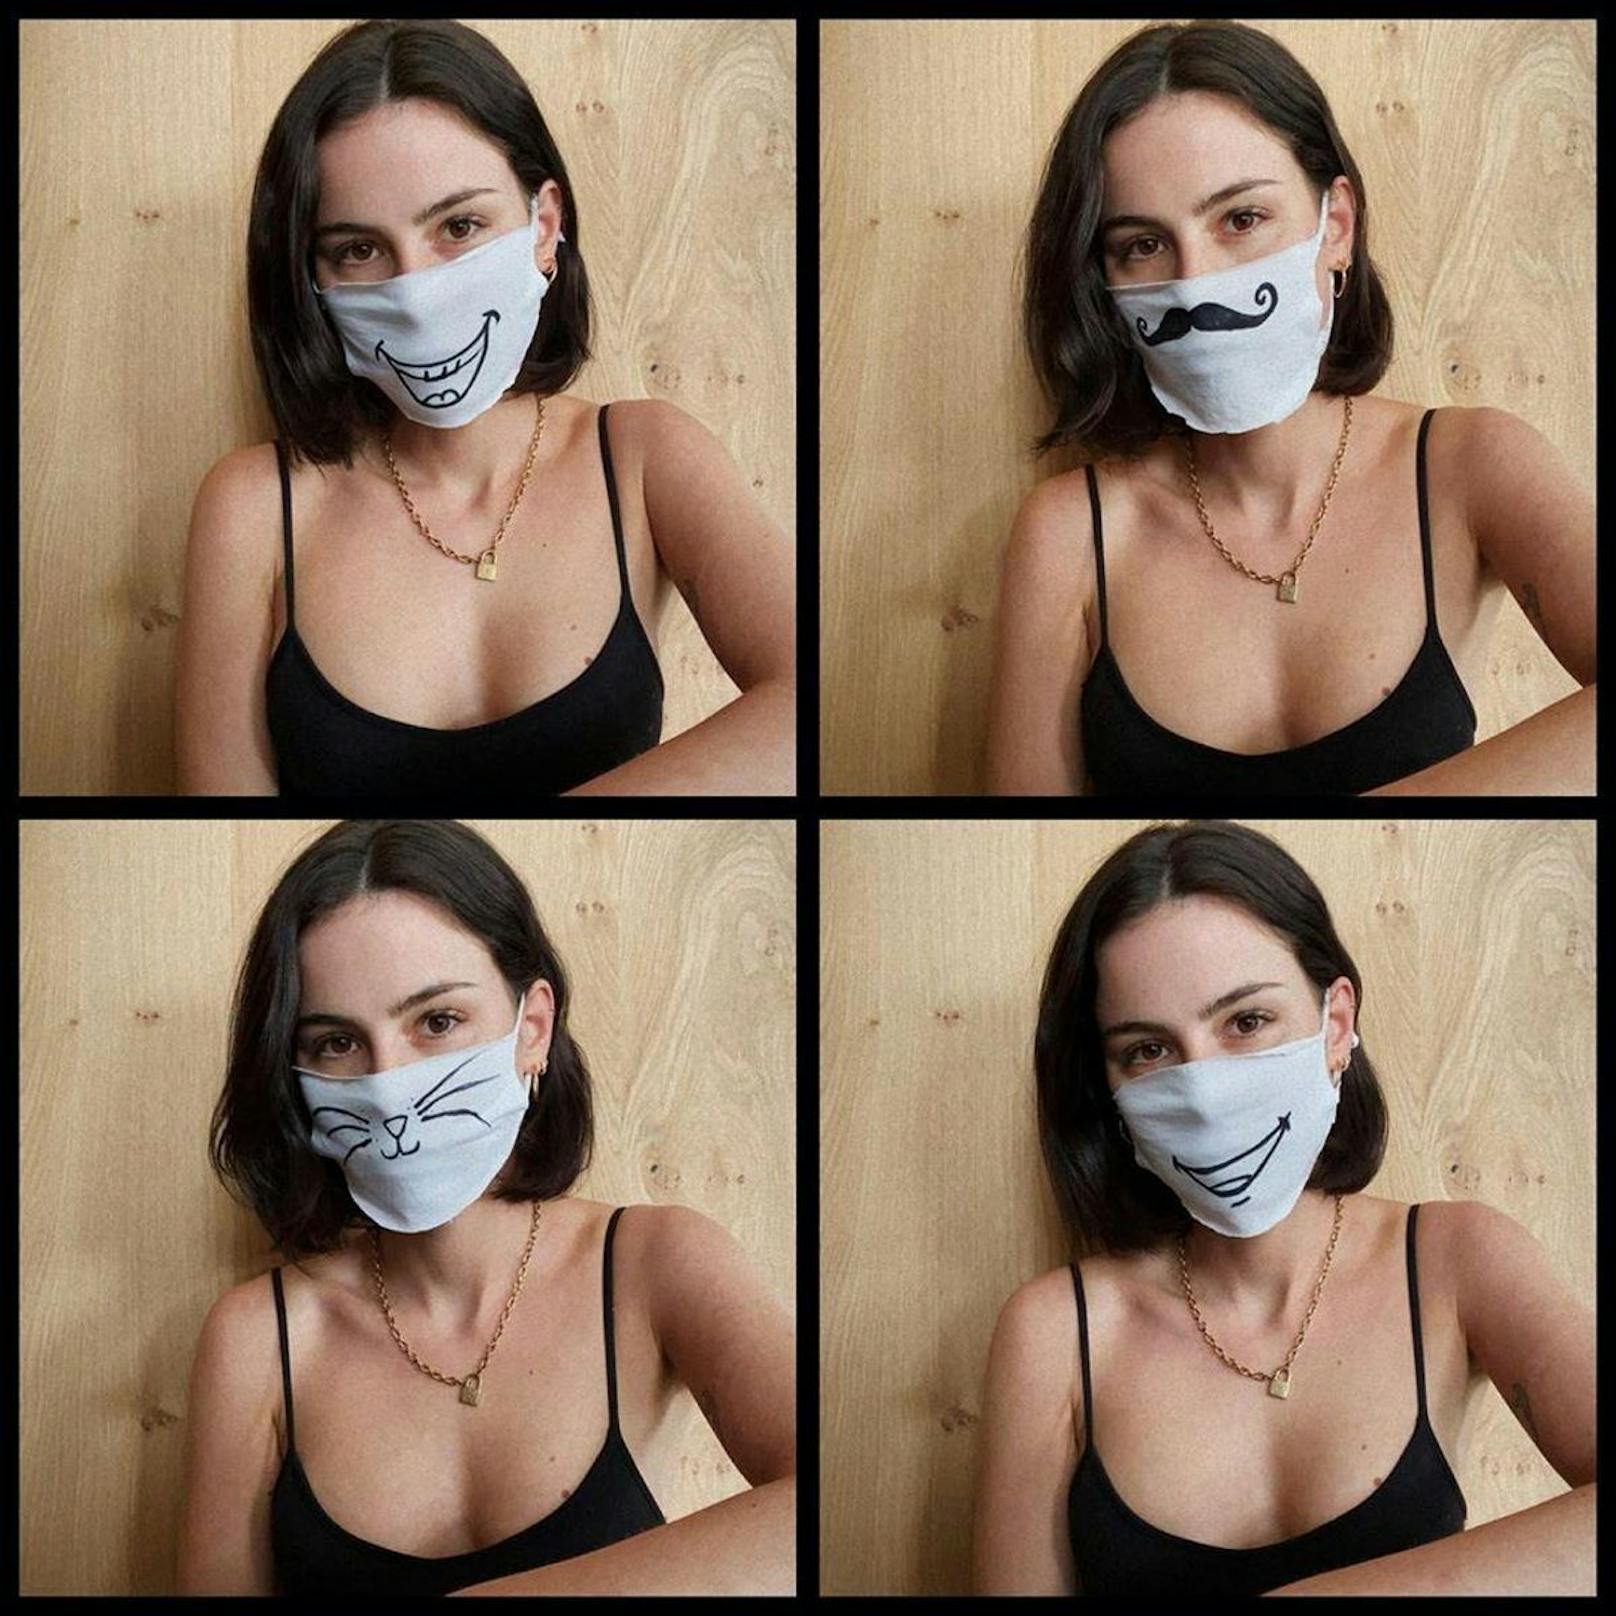 Lena (29) hat sich aus alten T-Shirts ihre eigene Masken geschnitten, diese Version ist also gratis. Sieht hübsch aus. Über die Effektivität der Maske lässt sich allerdings streiten.